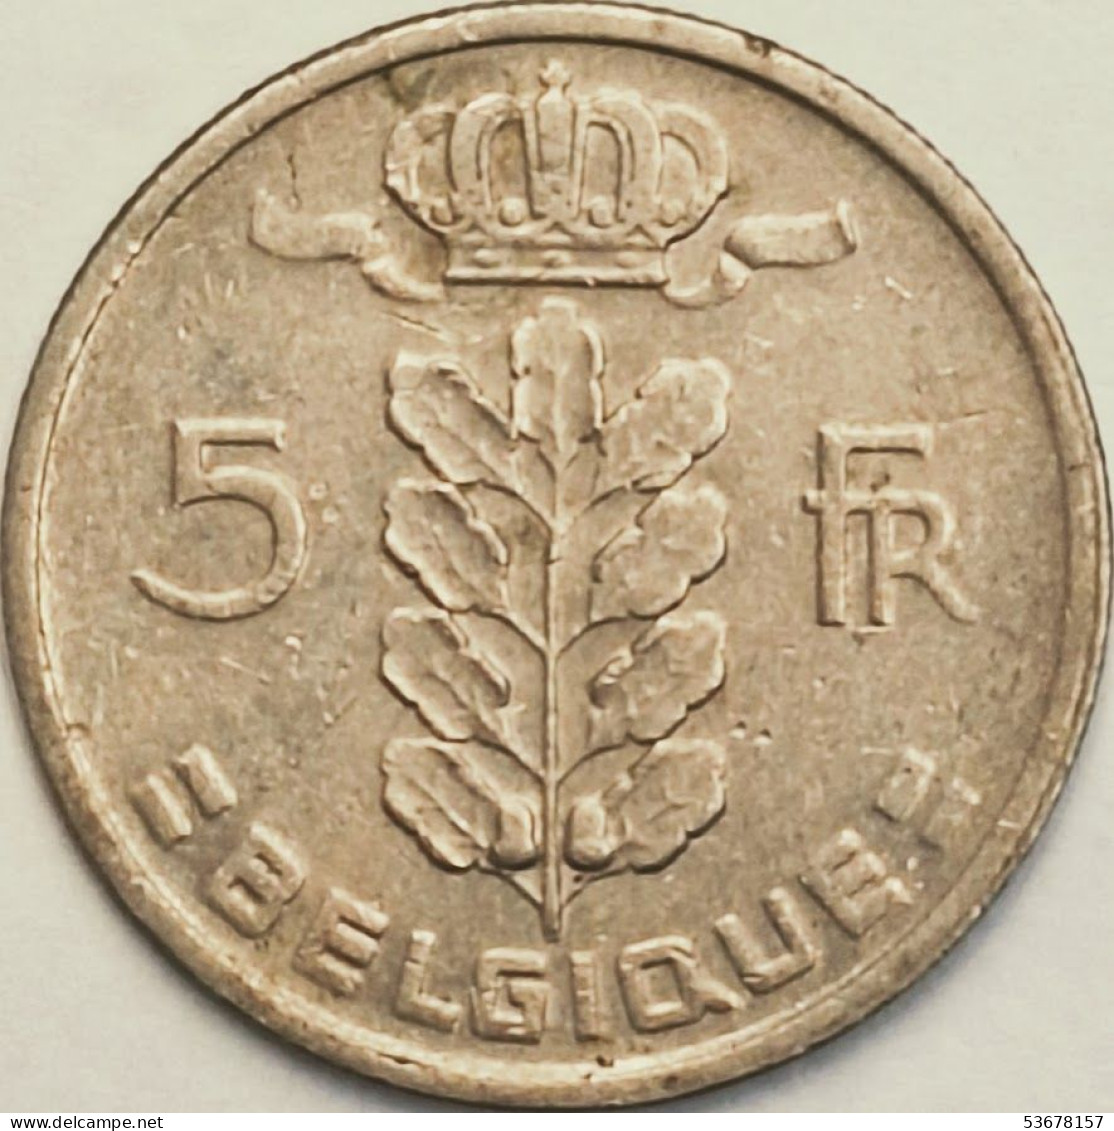 Belgium - 5 Francs 1963, KM# 134.1 (#3168) - 5 Francs